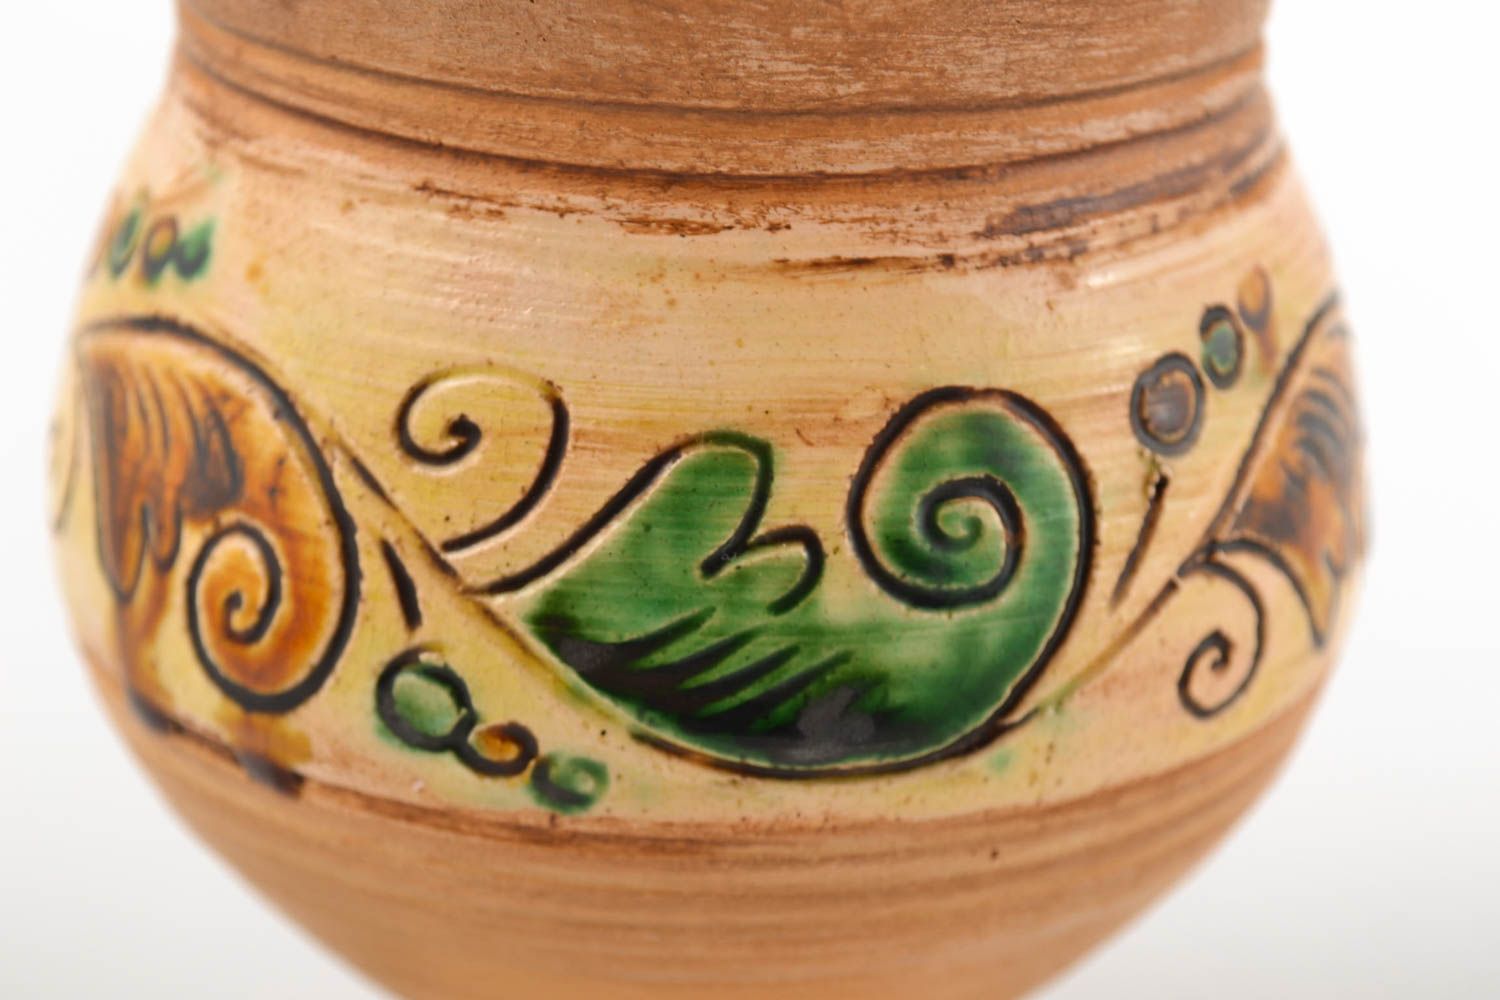 Becher aus Ton handmade Keramik Geschirr Küchen Deko mit Bemalung schön foto 3